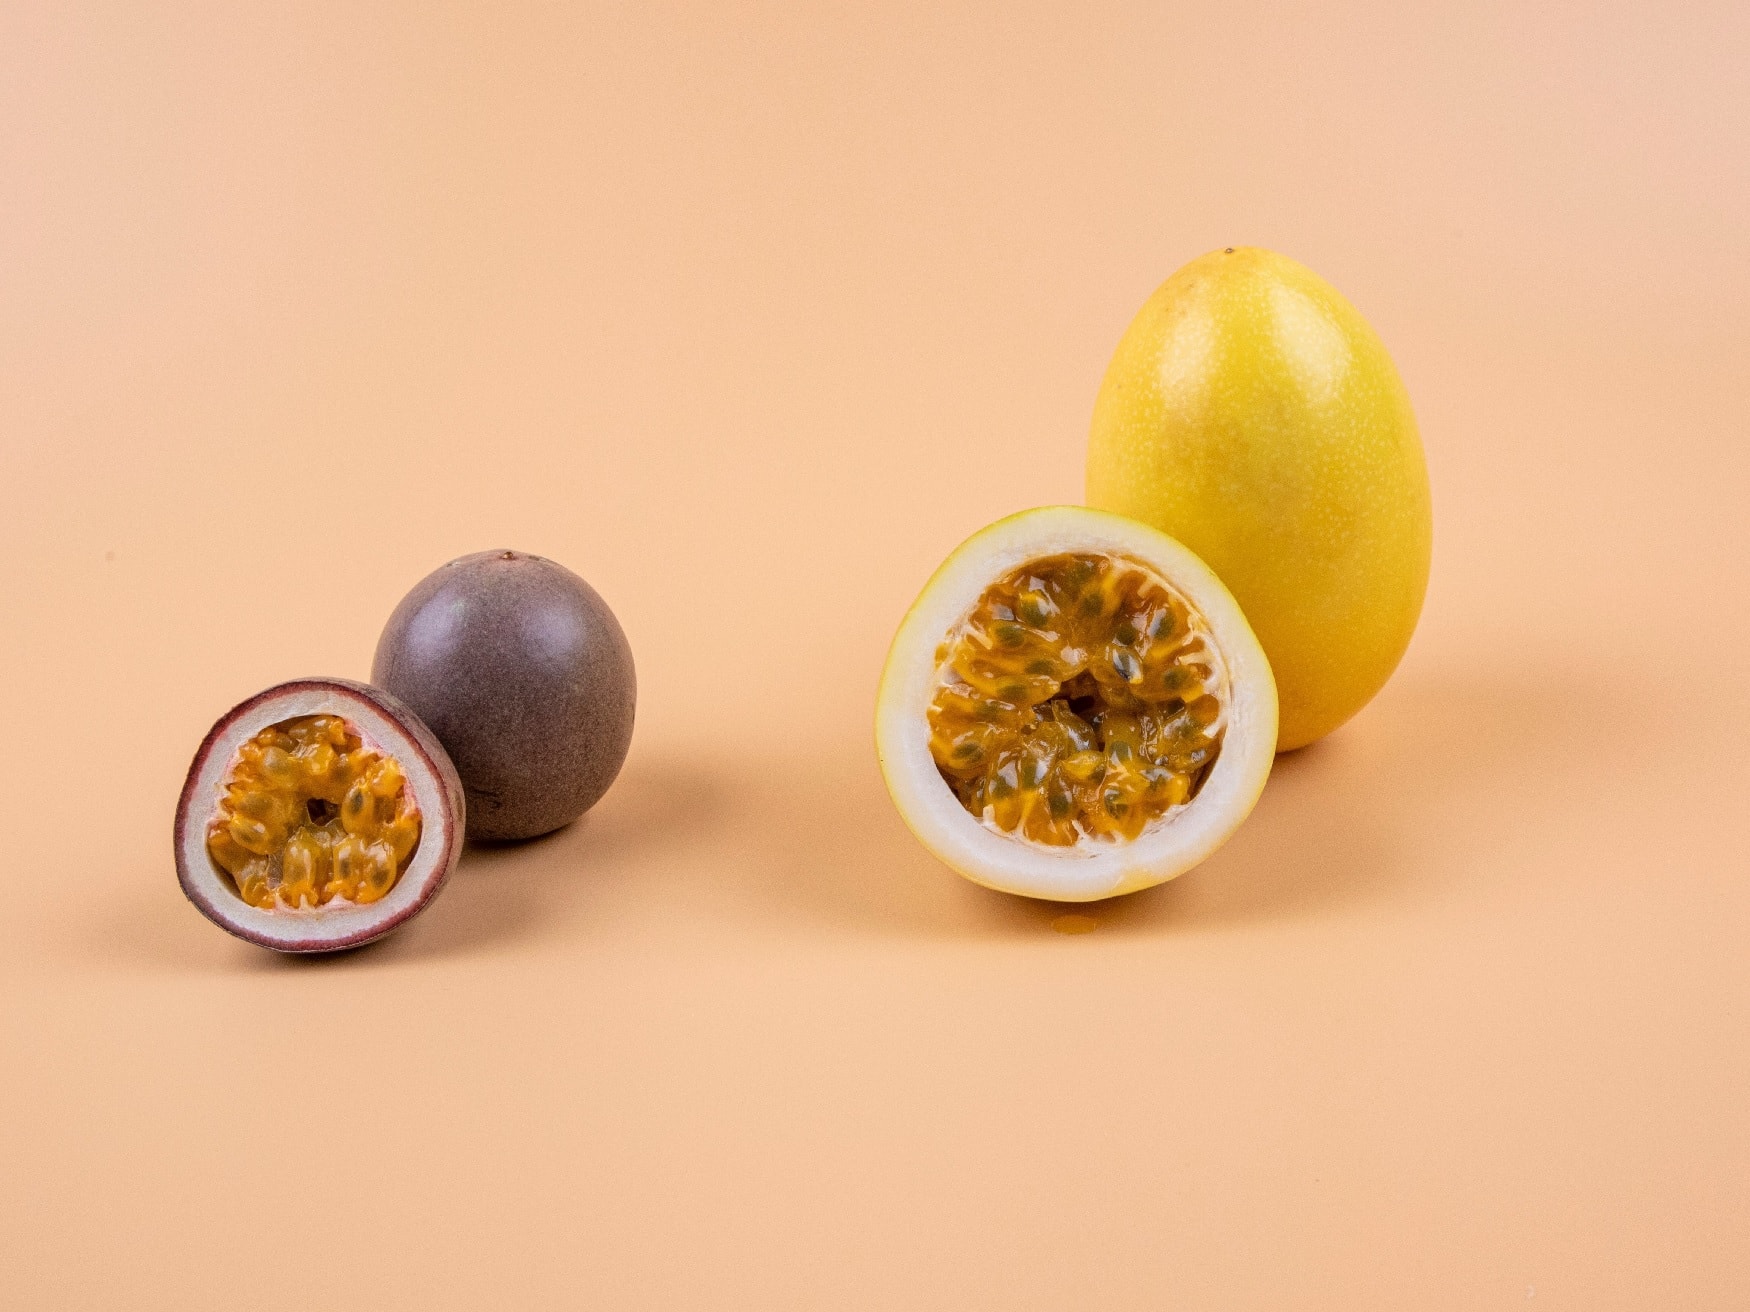 Wo liegt der Unterschied zwischen Passionsfrucht und Maracuja?